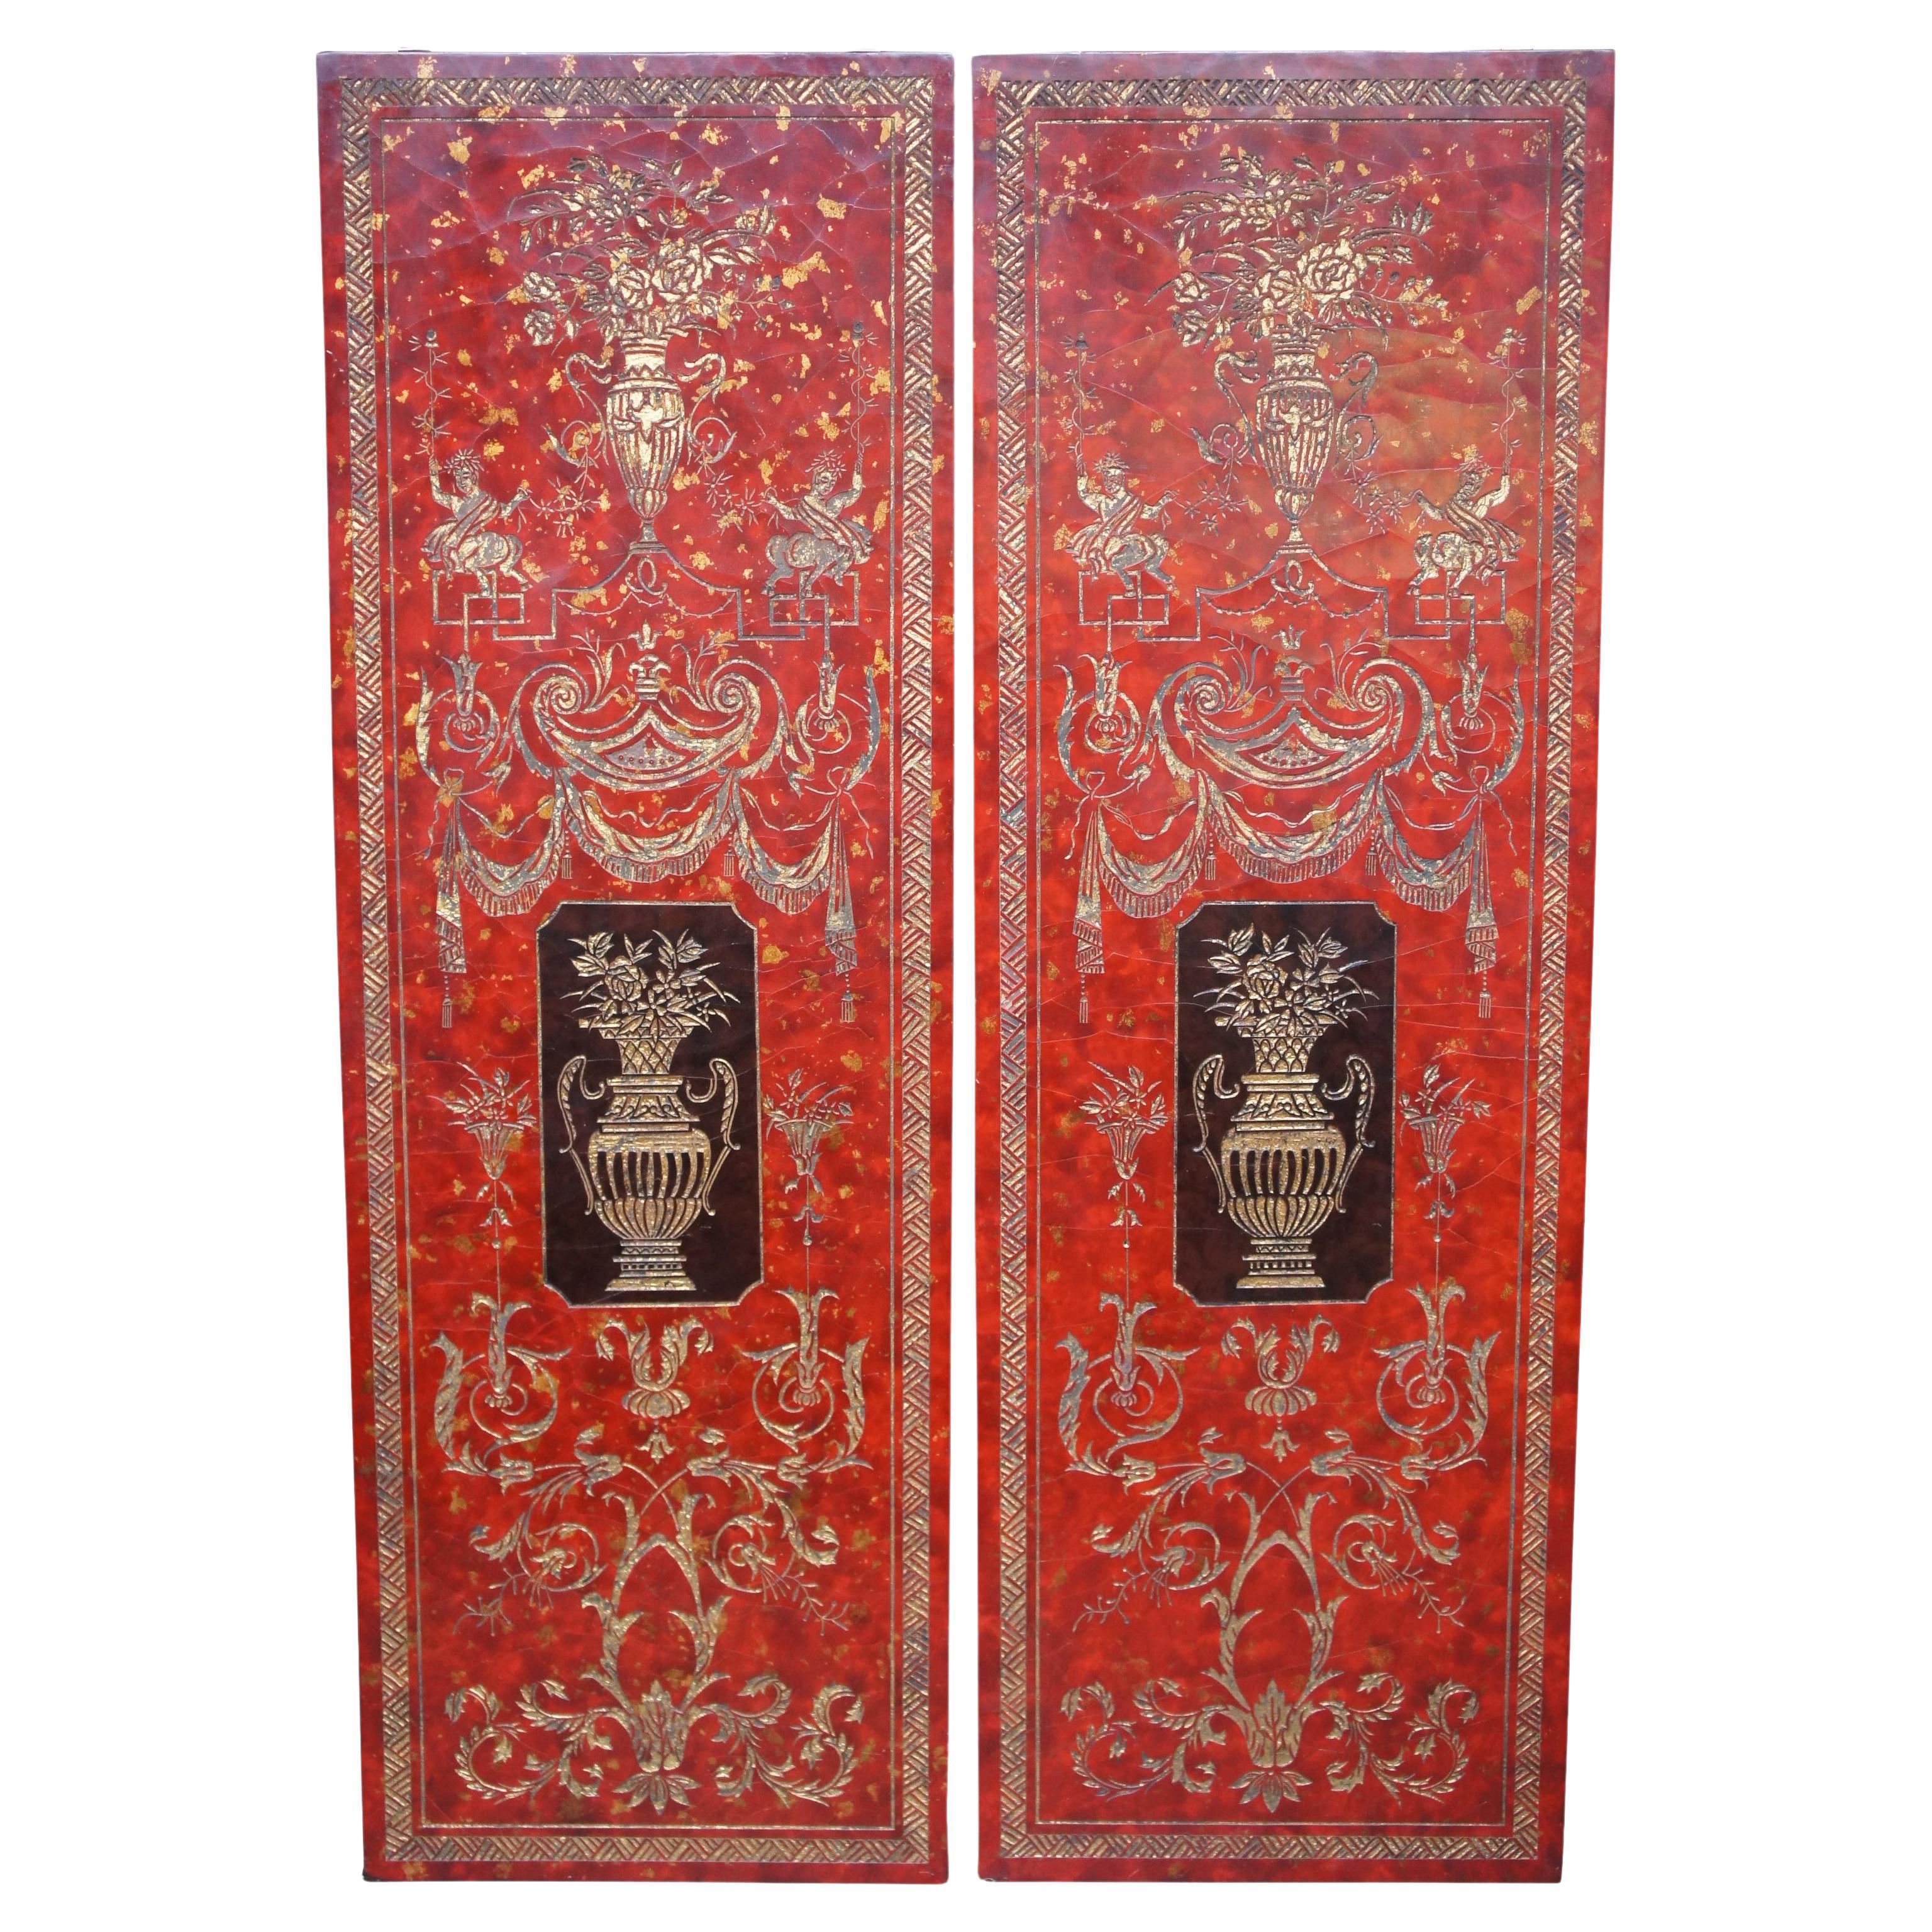 2 panneaux de suspension muraux en laque rouge de style néoclassique français - Urnes et figures en or